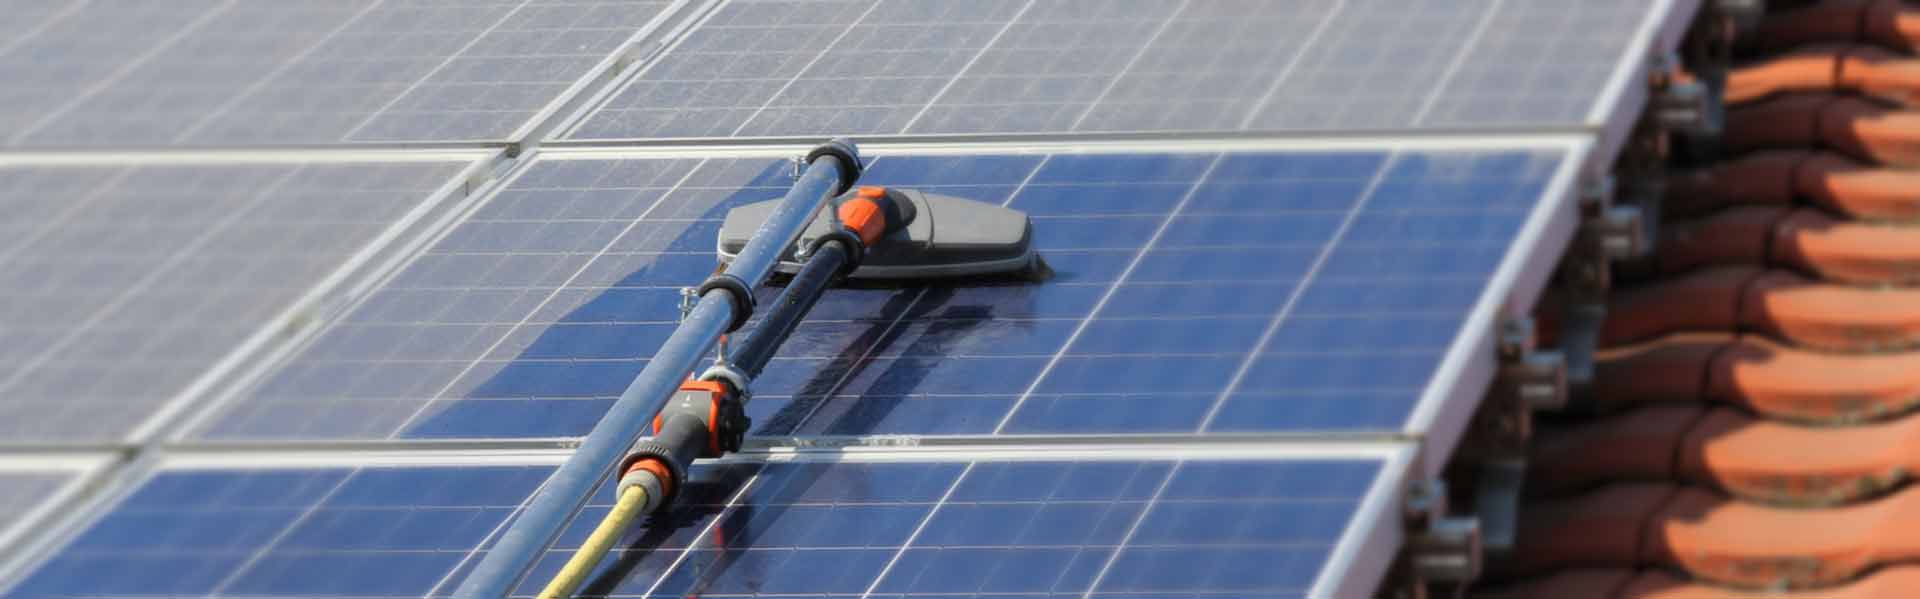 Reinigung von Photovoltaik-Sonnenkollektoren